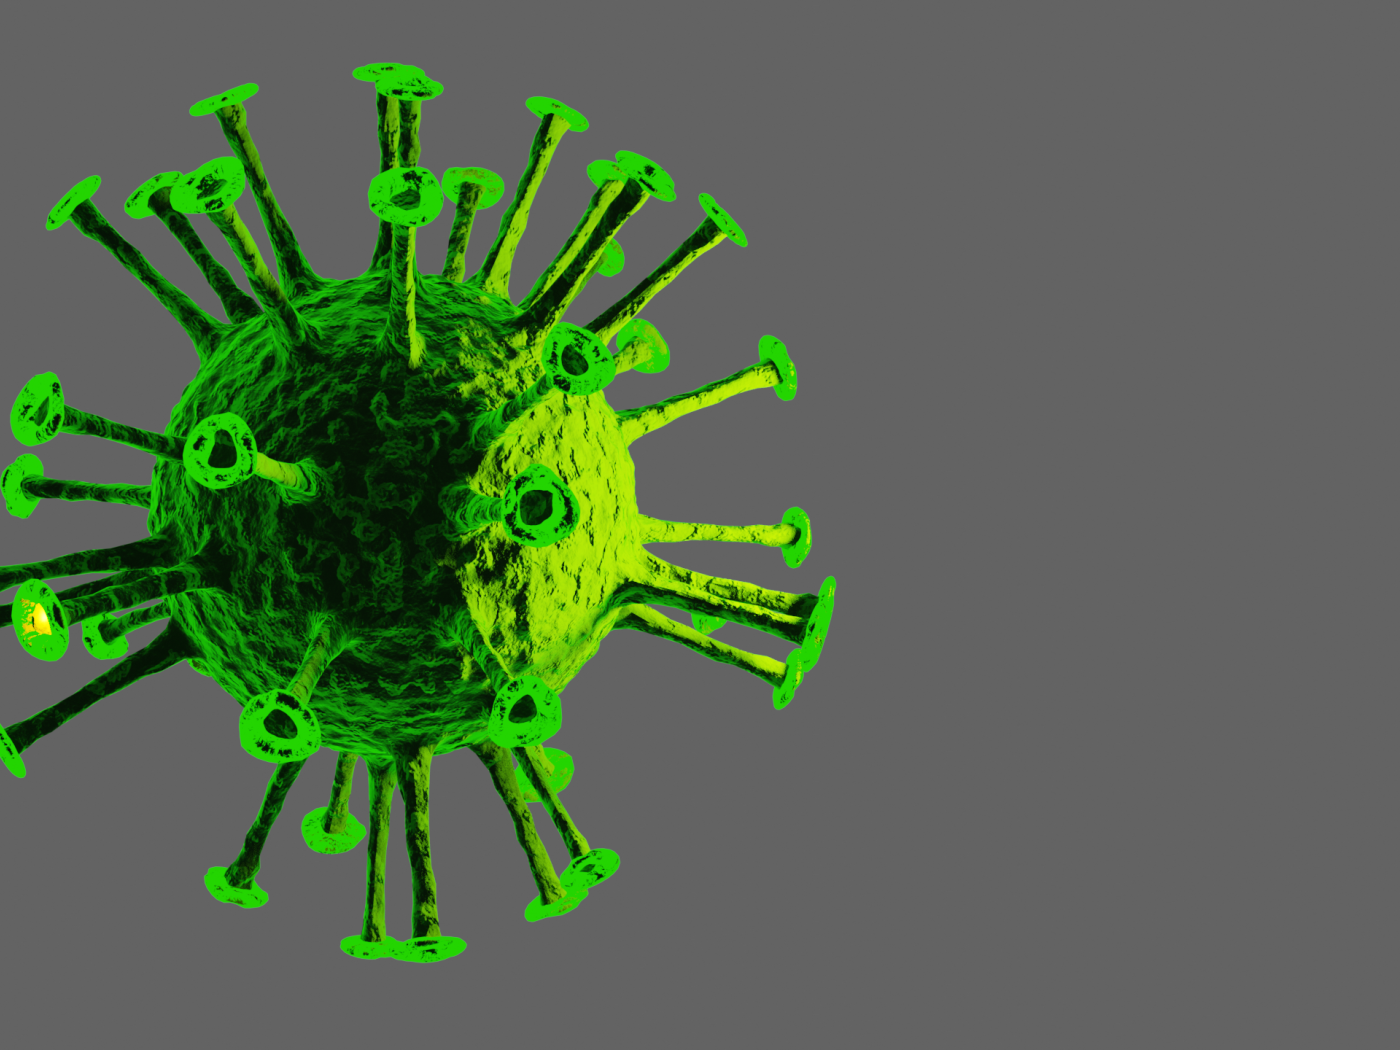 Зеленый вирус на сером фоне